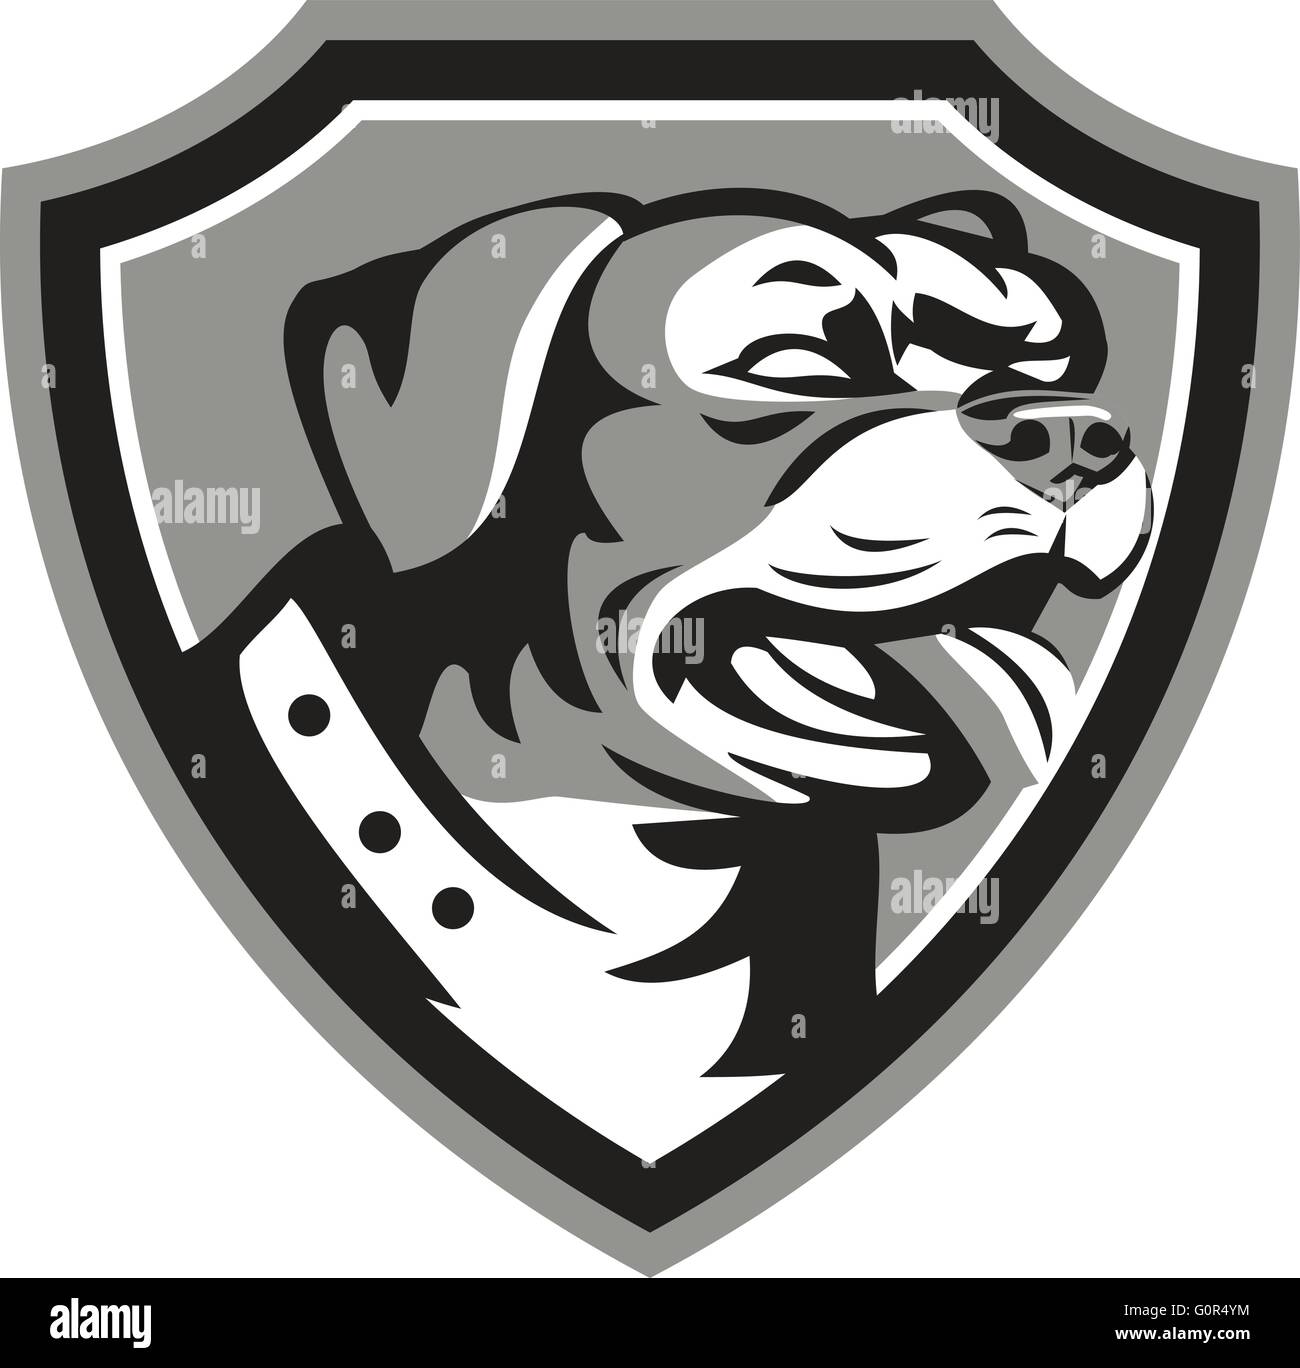 Bianco e nero illustrazione di un rottweiler Metzgerhund mastiff-cane cane da guardia testa guardando al lato imposta all'interno di cresta fatto in stile retrò. Illustrazione Vettoriale